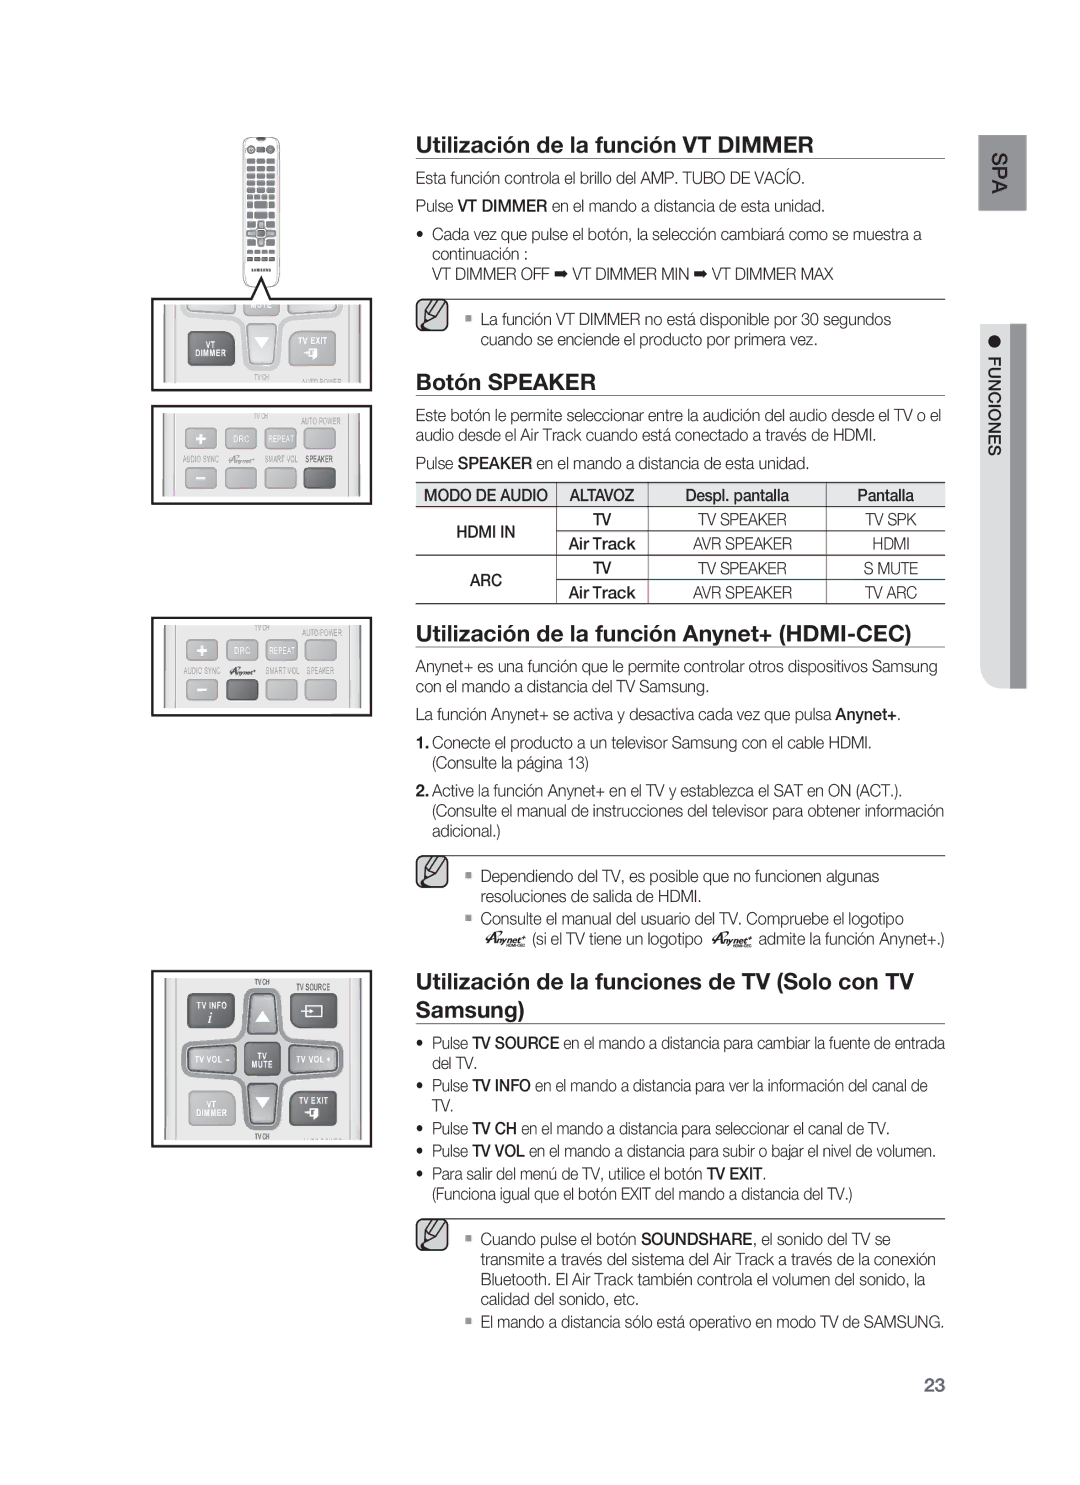 Samsung HW-F850/ZF manual Utilización de la función VT Dimmer, Botón Speaker, Utilización de la función Anynet+ HDMI-CEC 